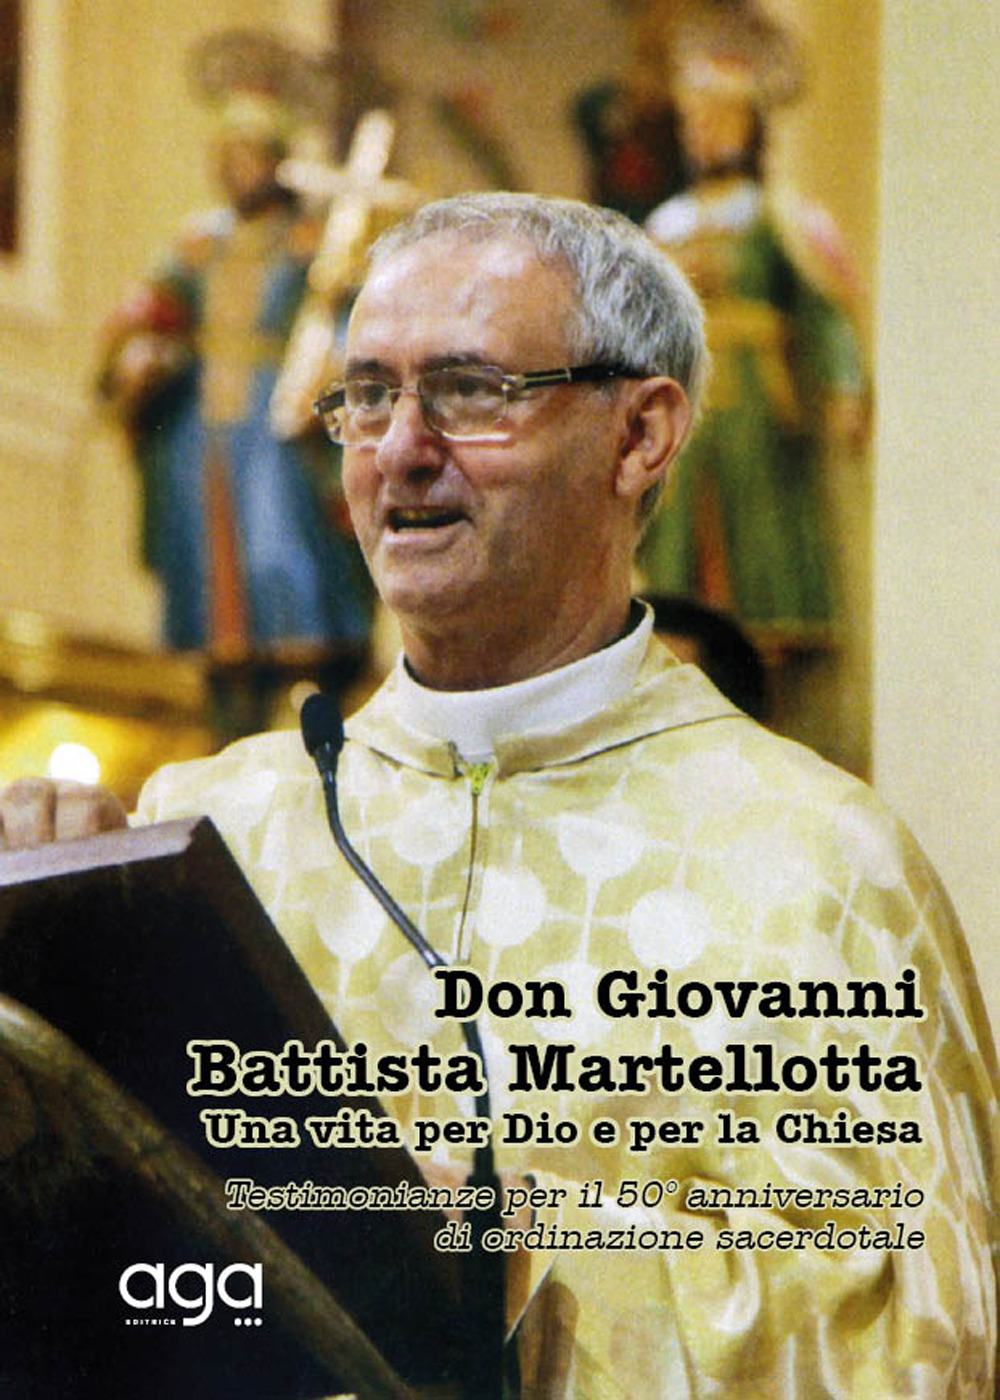 Don Giovanni Battista Martellotta. Una vita per Dio e per la chiesa